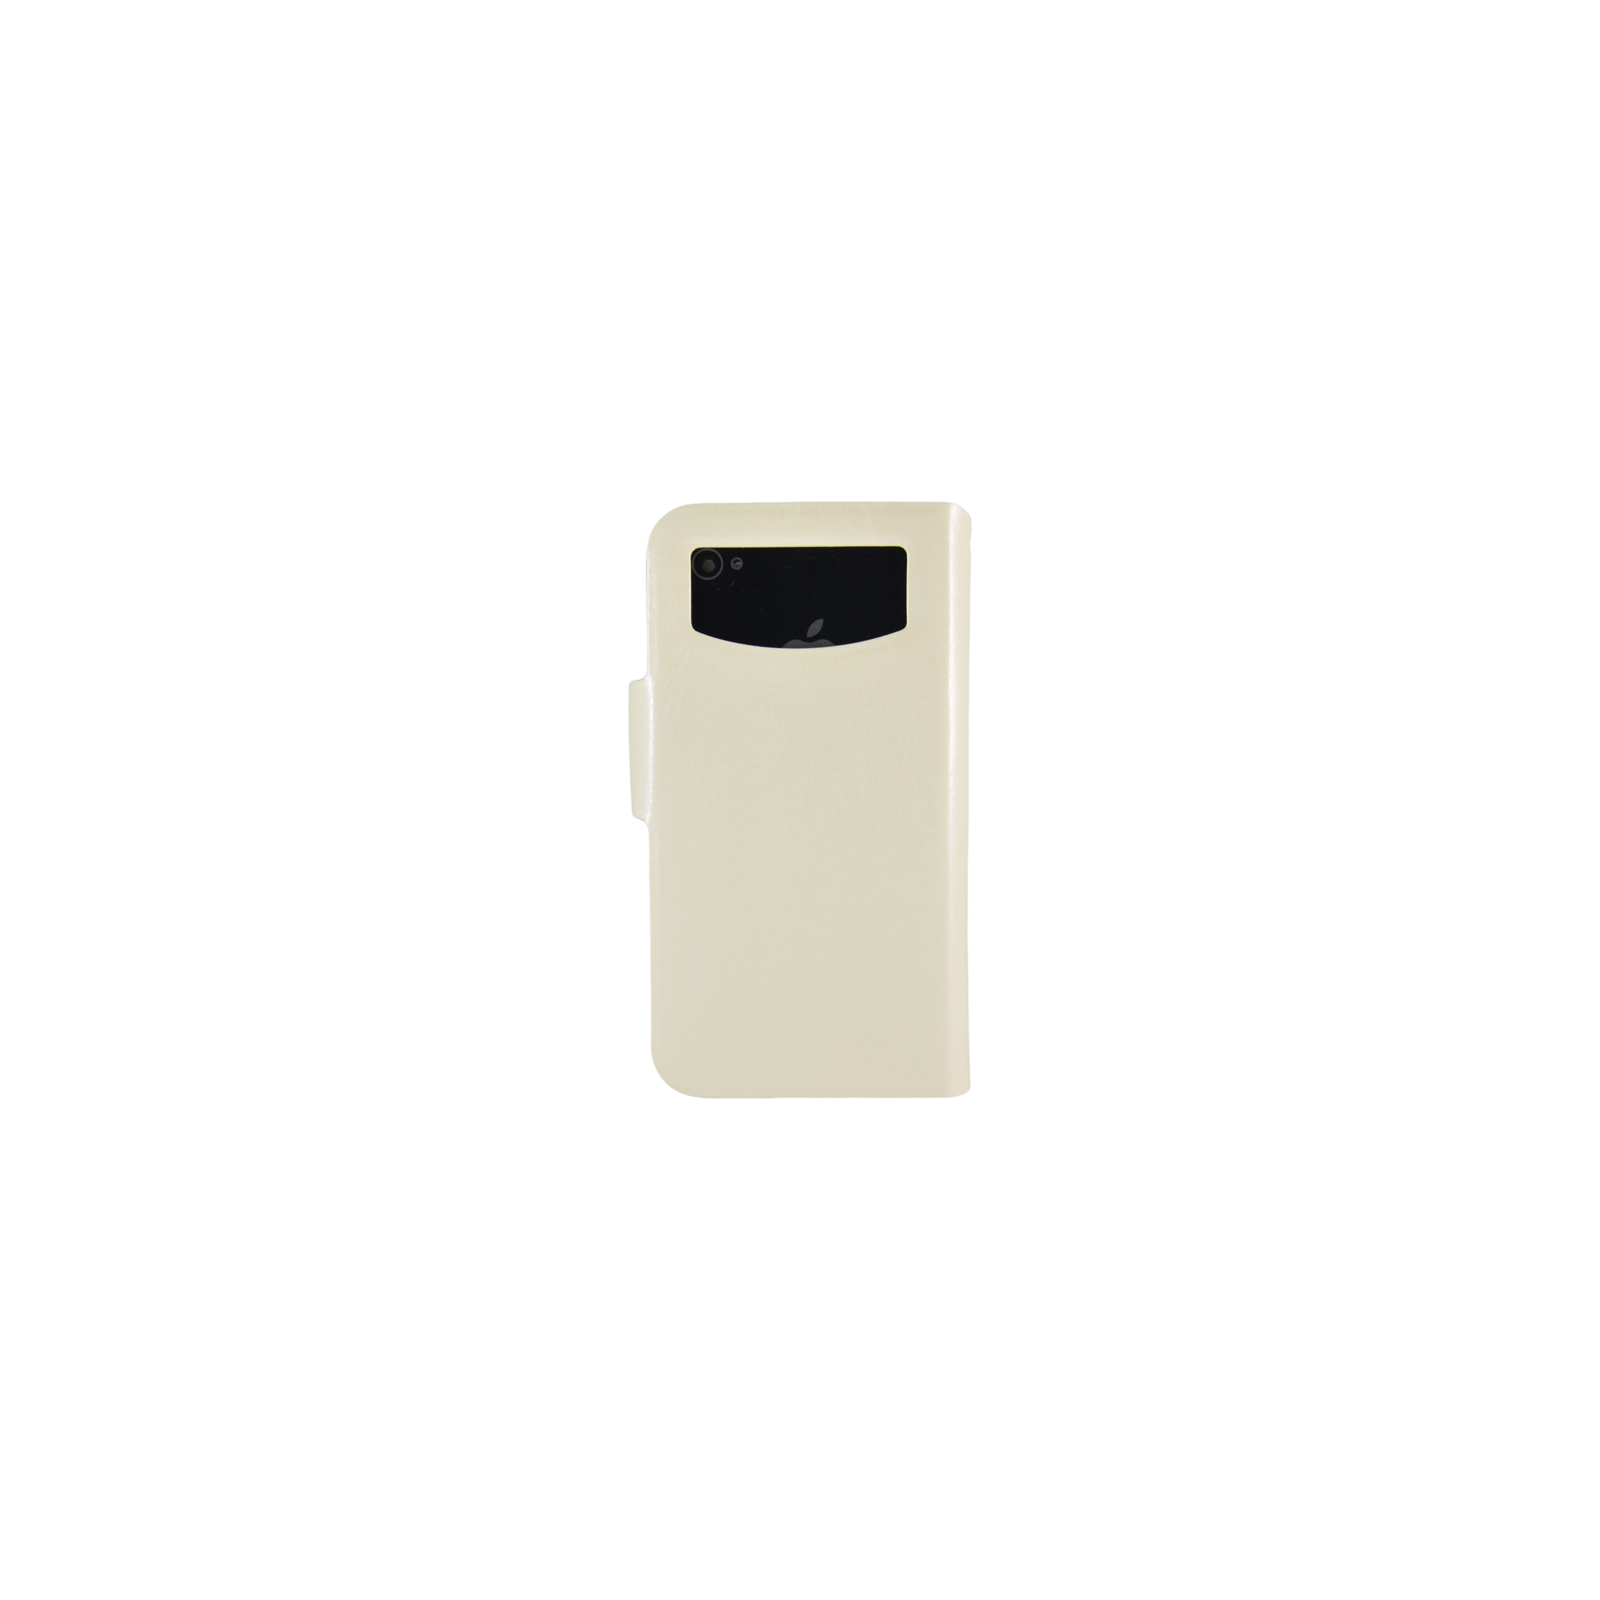 Чохол до мобільного телефона Pro-case універсальний Smartphone Universal Leather Case, 3.0-4.0 inc (SULC3wh) зображення 2